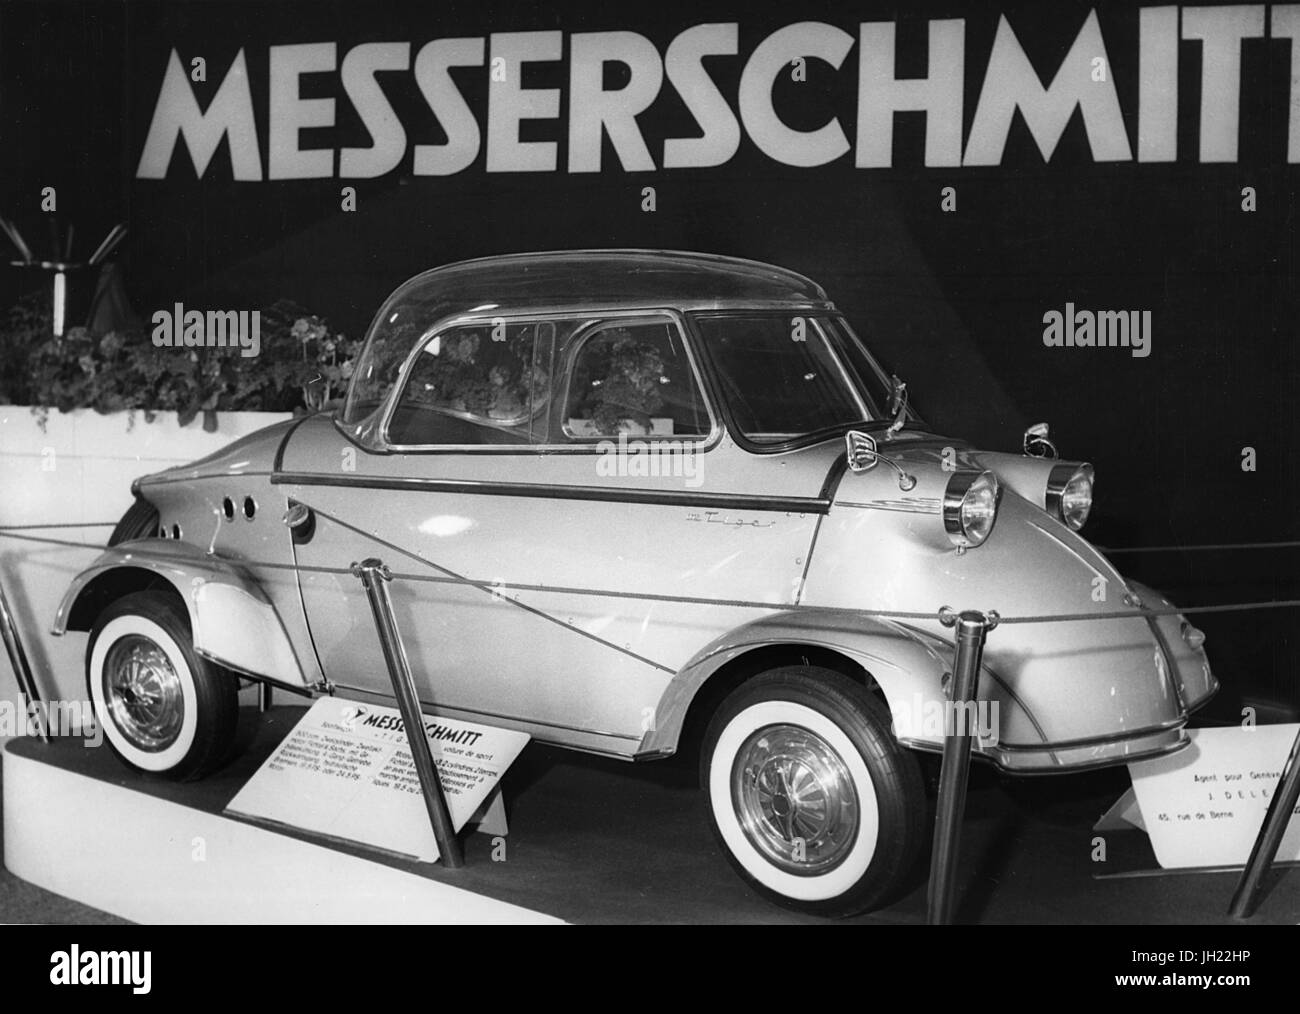 Messerschmitt,Geneva show 1958 Stock Photo